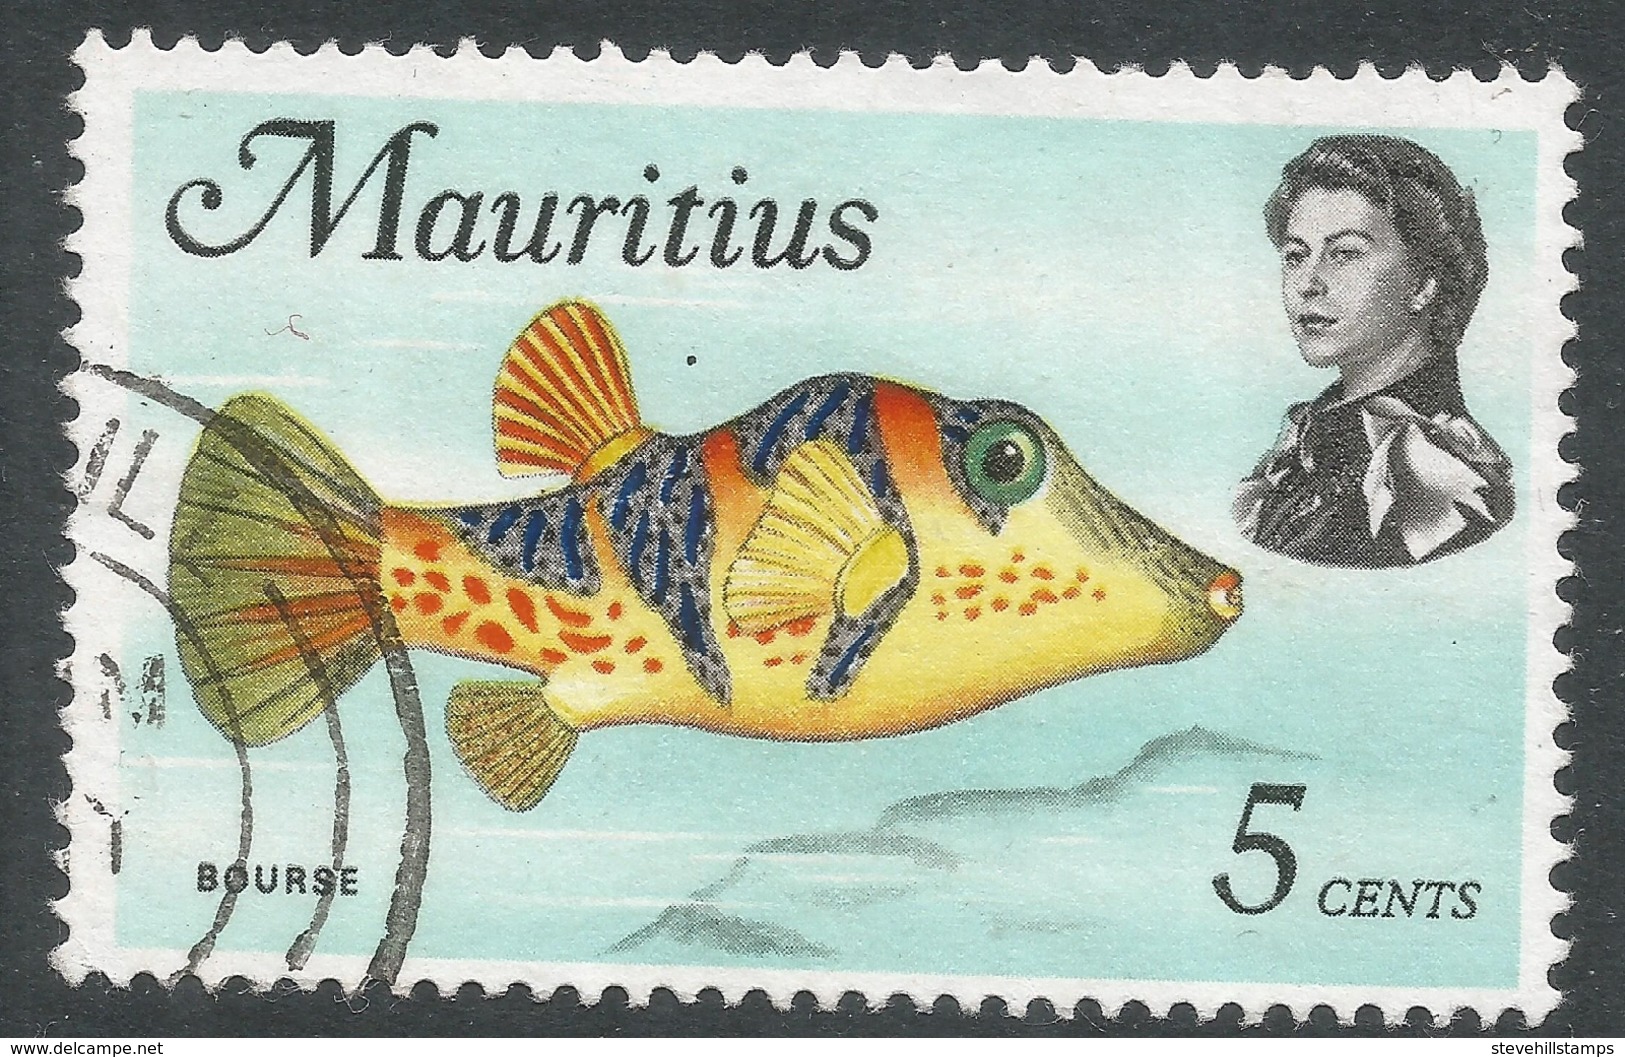 Mauritius. 1969 Sealife. 5c Used. SG 385 - Mauritius (1968-...)